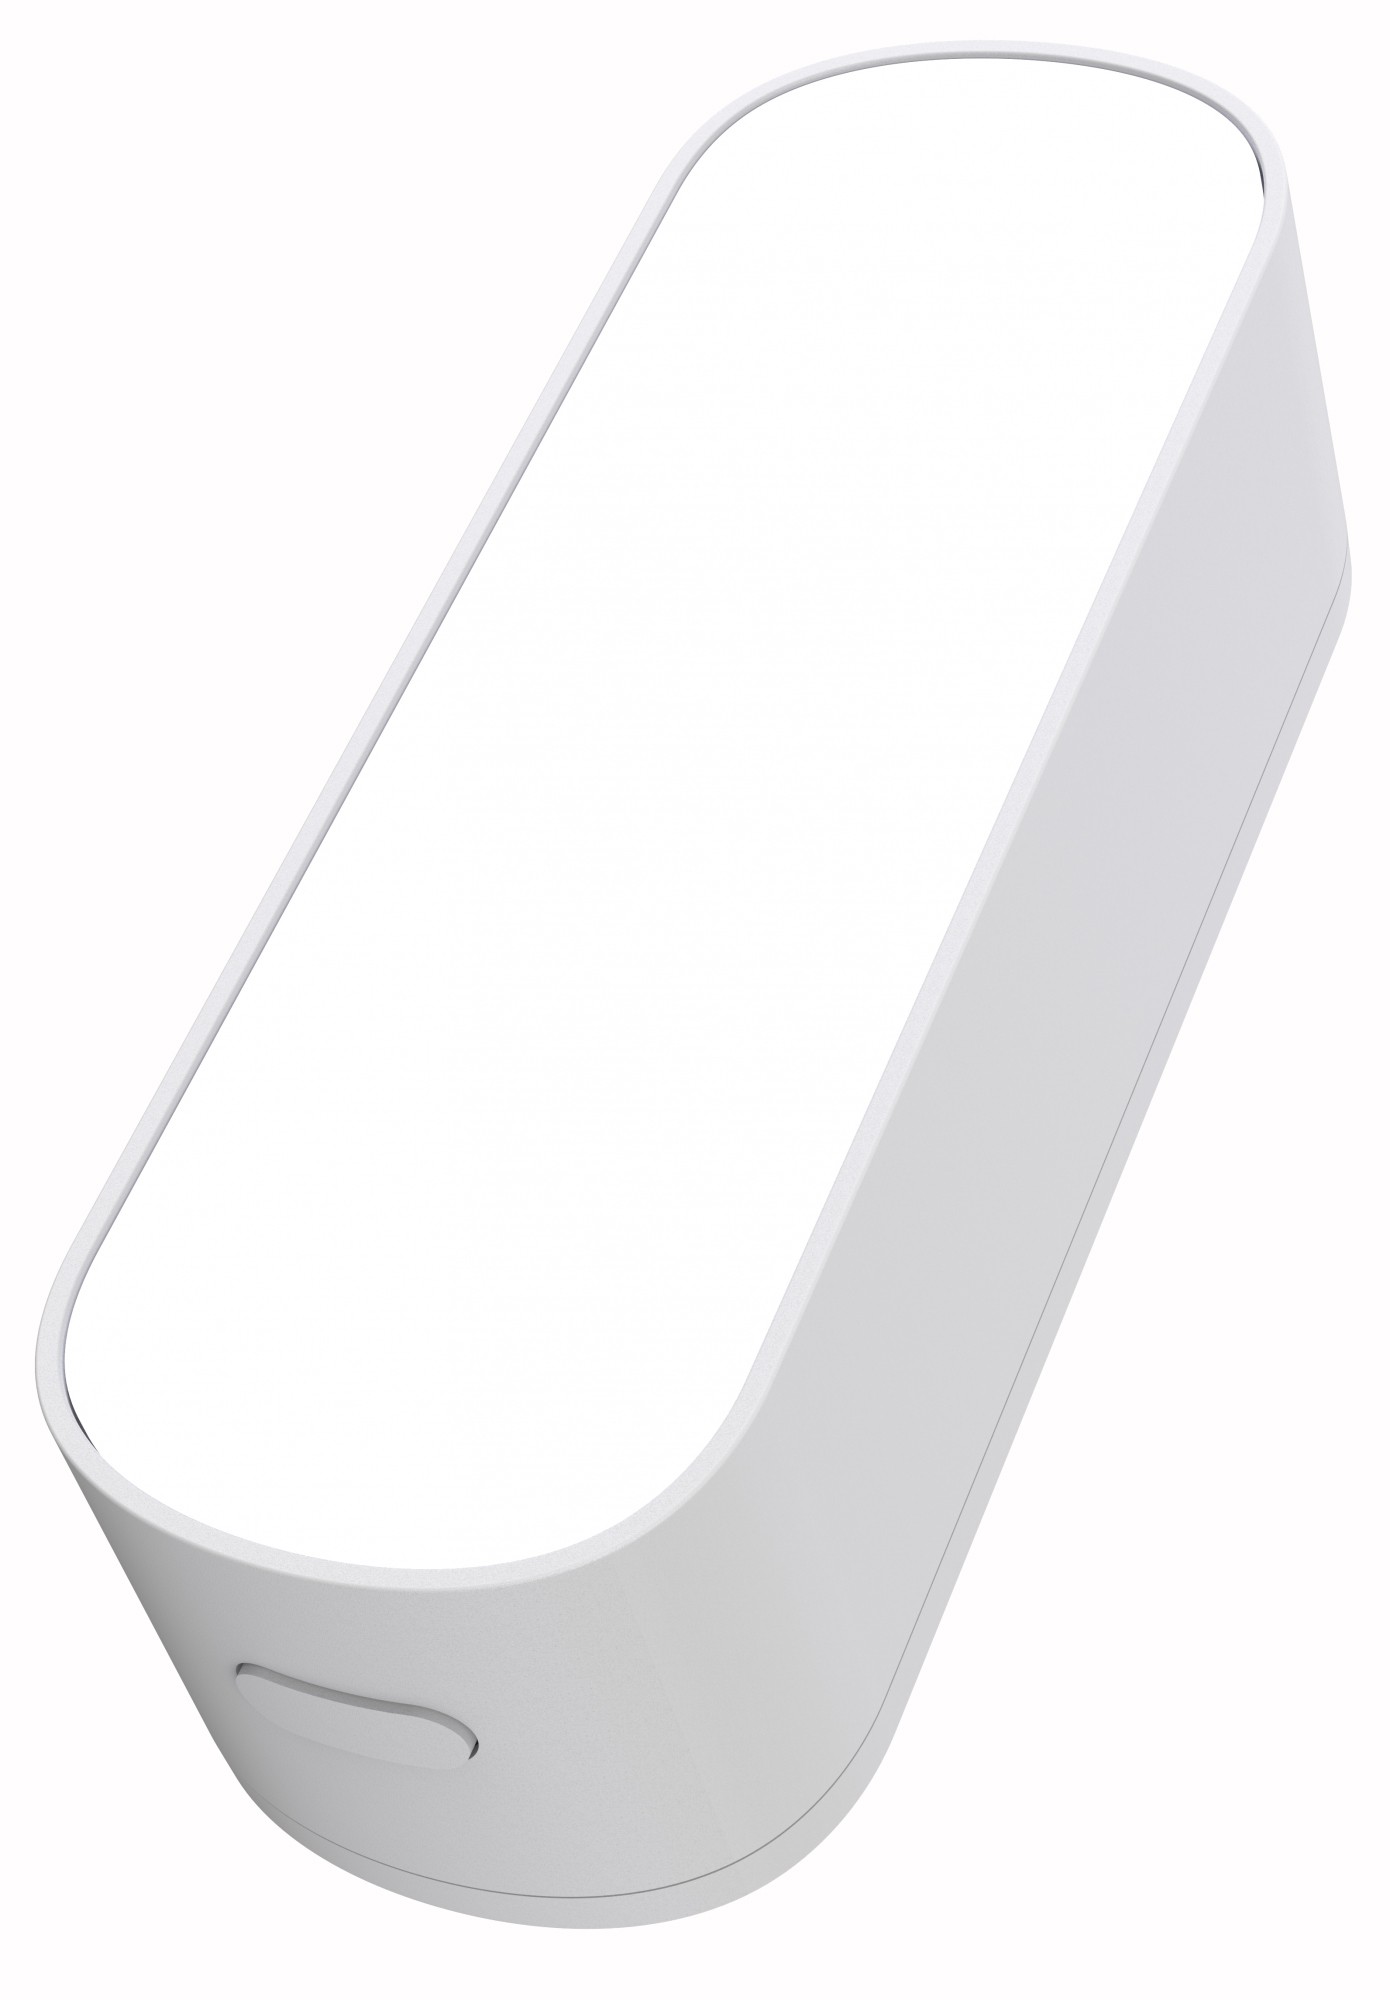 Цена беспроводной датчик освещения Tervix Pro Line ZigBee Light Sensor (418041) в Днепре